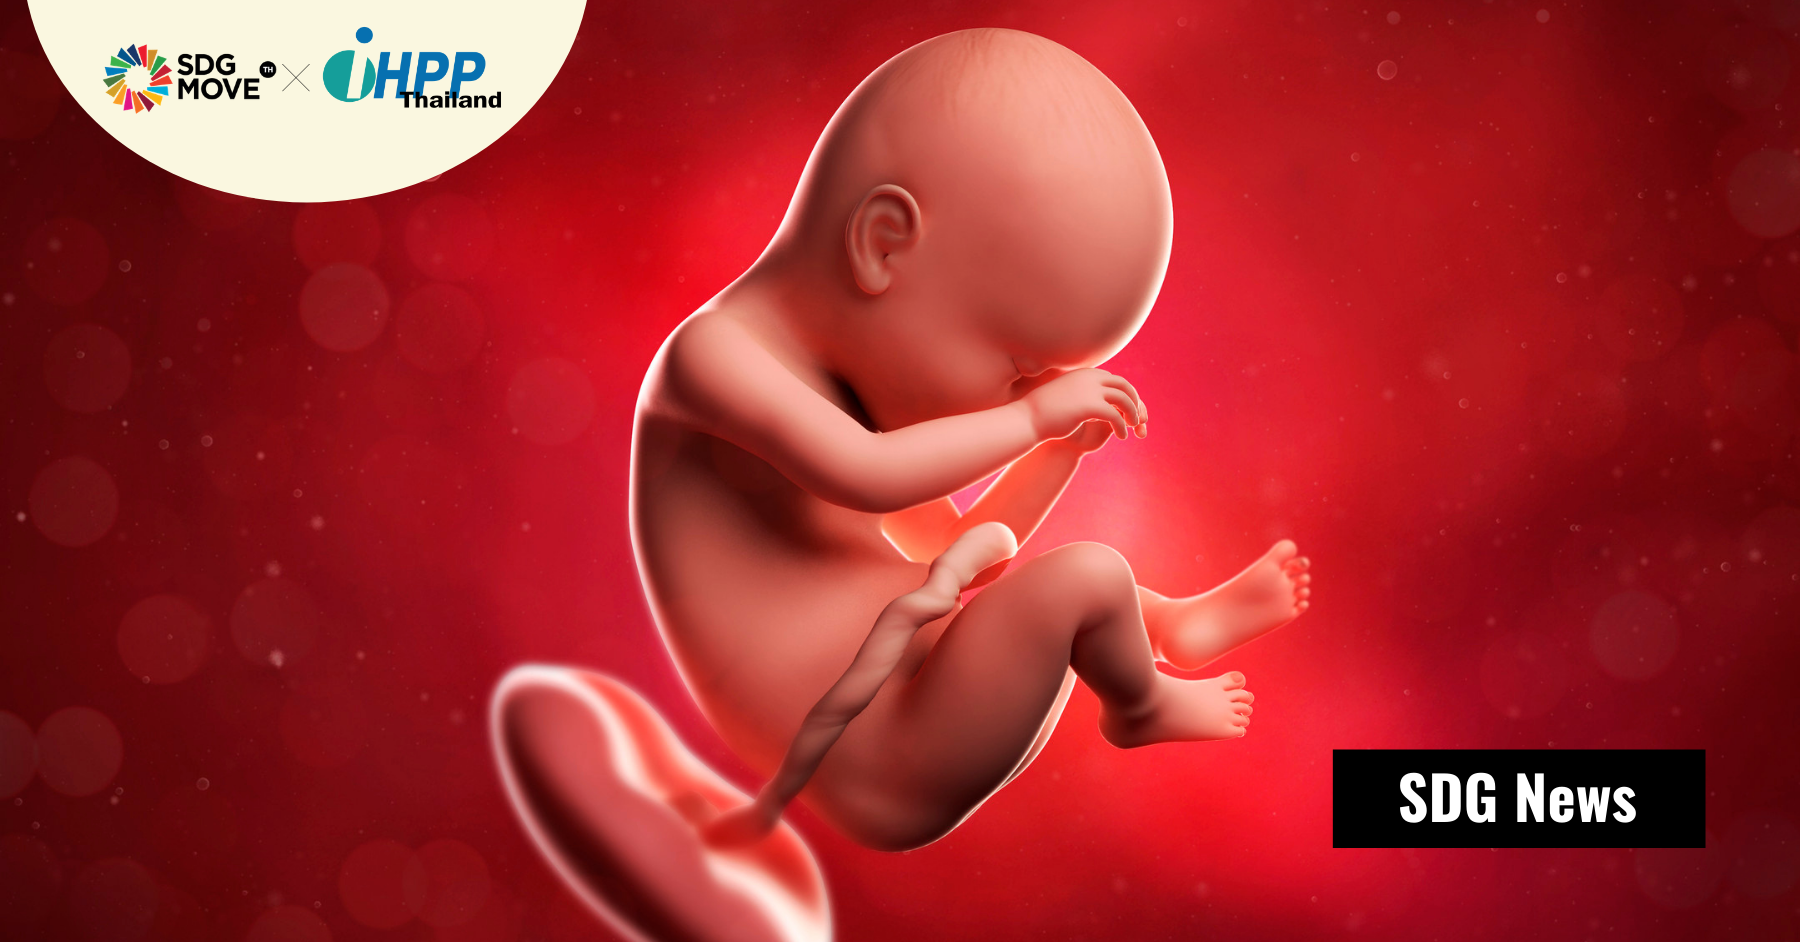 ทารกอาจได้รับมลพิษตั้งแต่อยู่ในครรภ์ เมื่อนักวิจัยพบไมโครพลาสติกในรกเด็กเป็นครั้งแรก